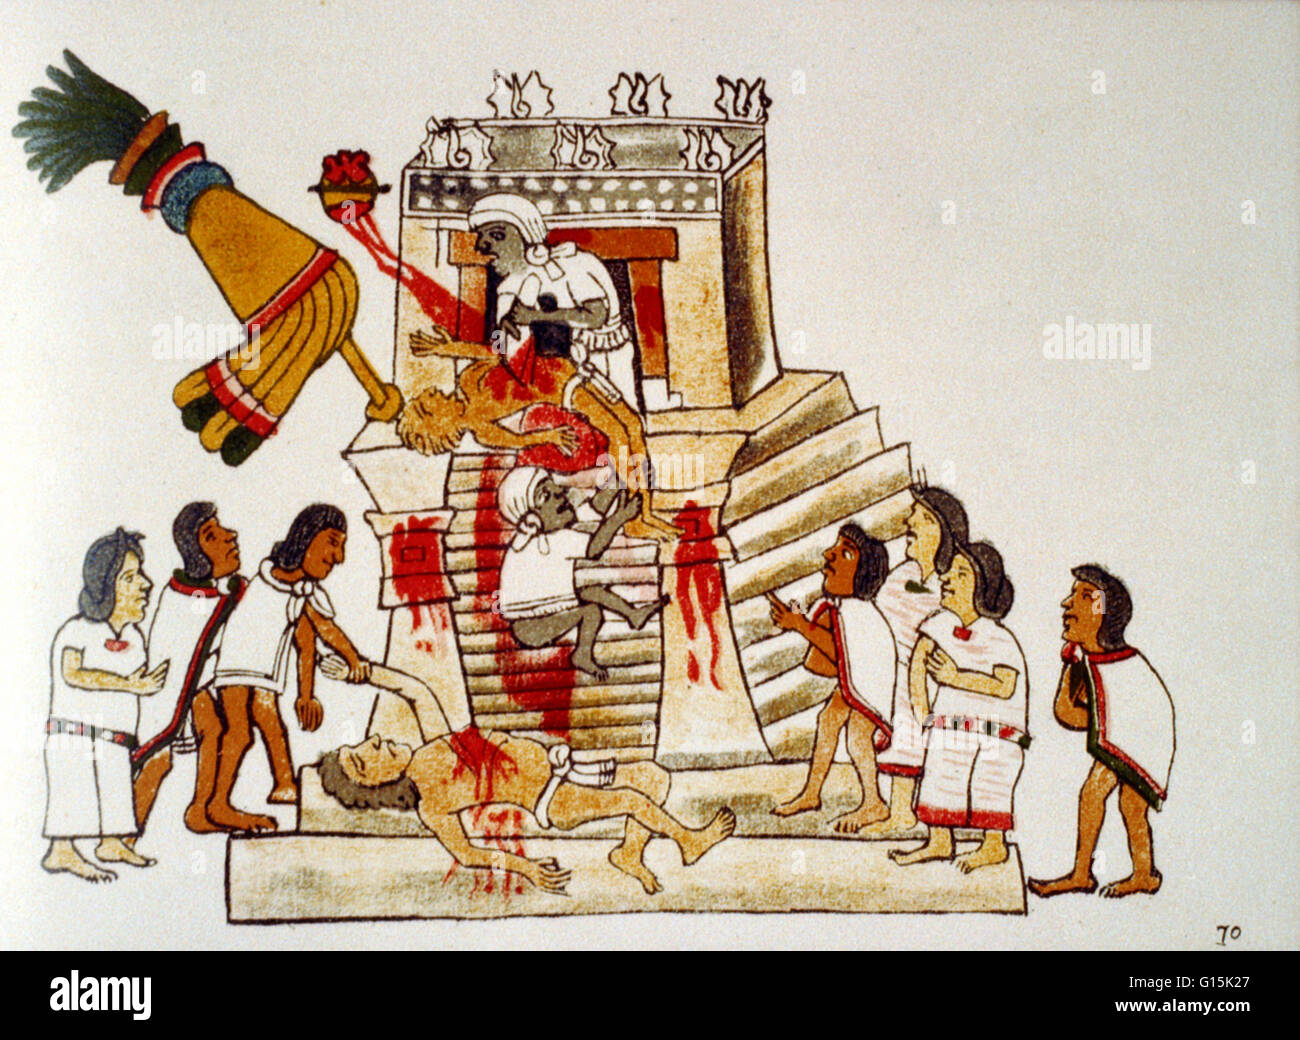 Imprimir titulado: sacerdote azteca realizar la ofrenda del sacrificio de la vida del corazón humano a dios de la guerra Huitzilopochtli. Tomada desde el Codex Magliabechiano. Huitzilopochtli ("Colibrí azul a la izquierda') era el dios azteca del sol y de la guerra. Los Aztecas o Foto de stock